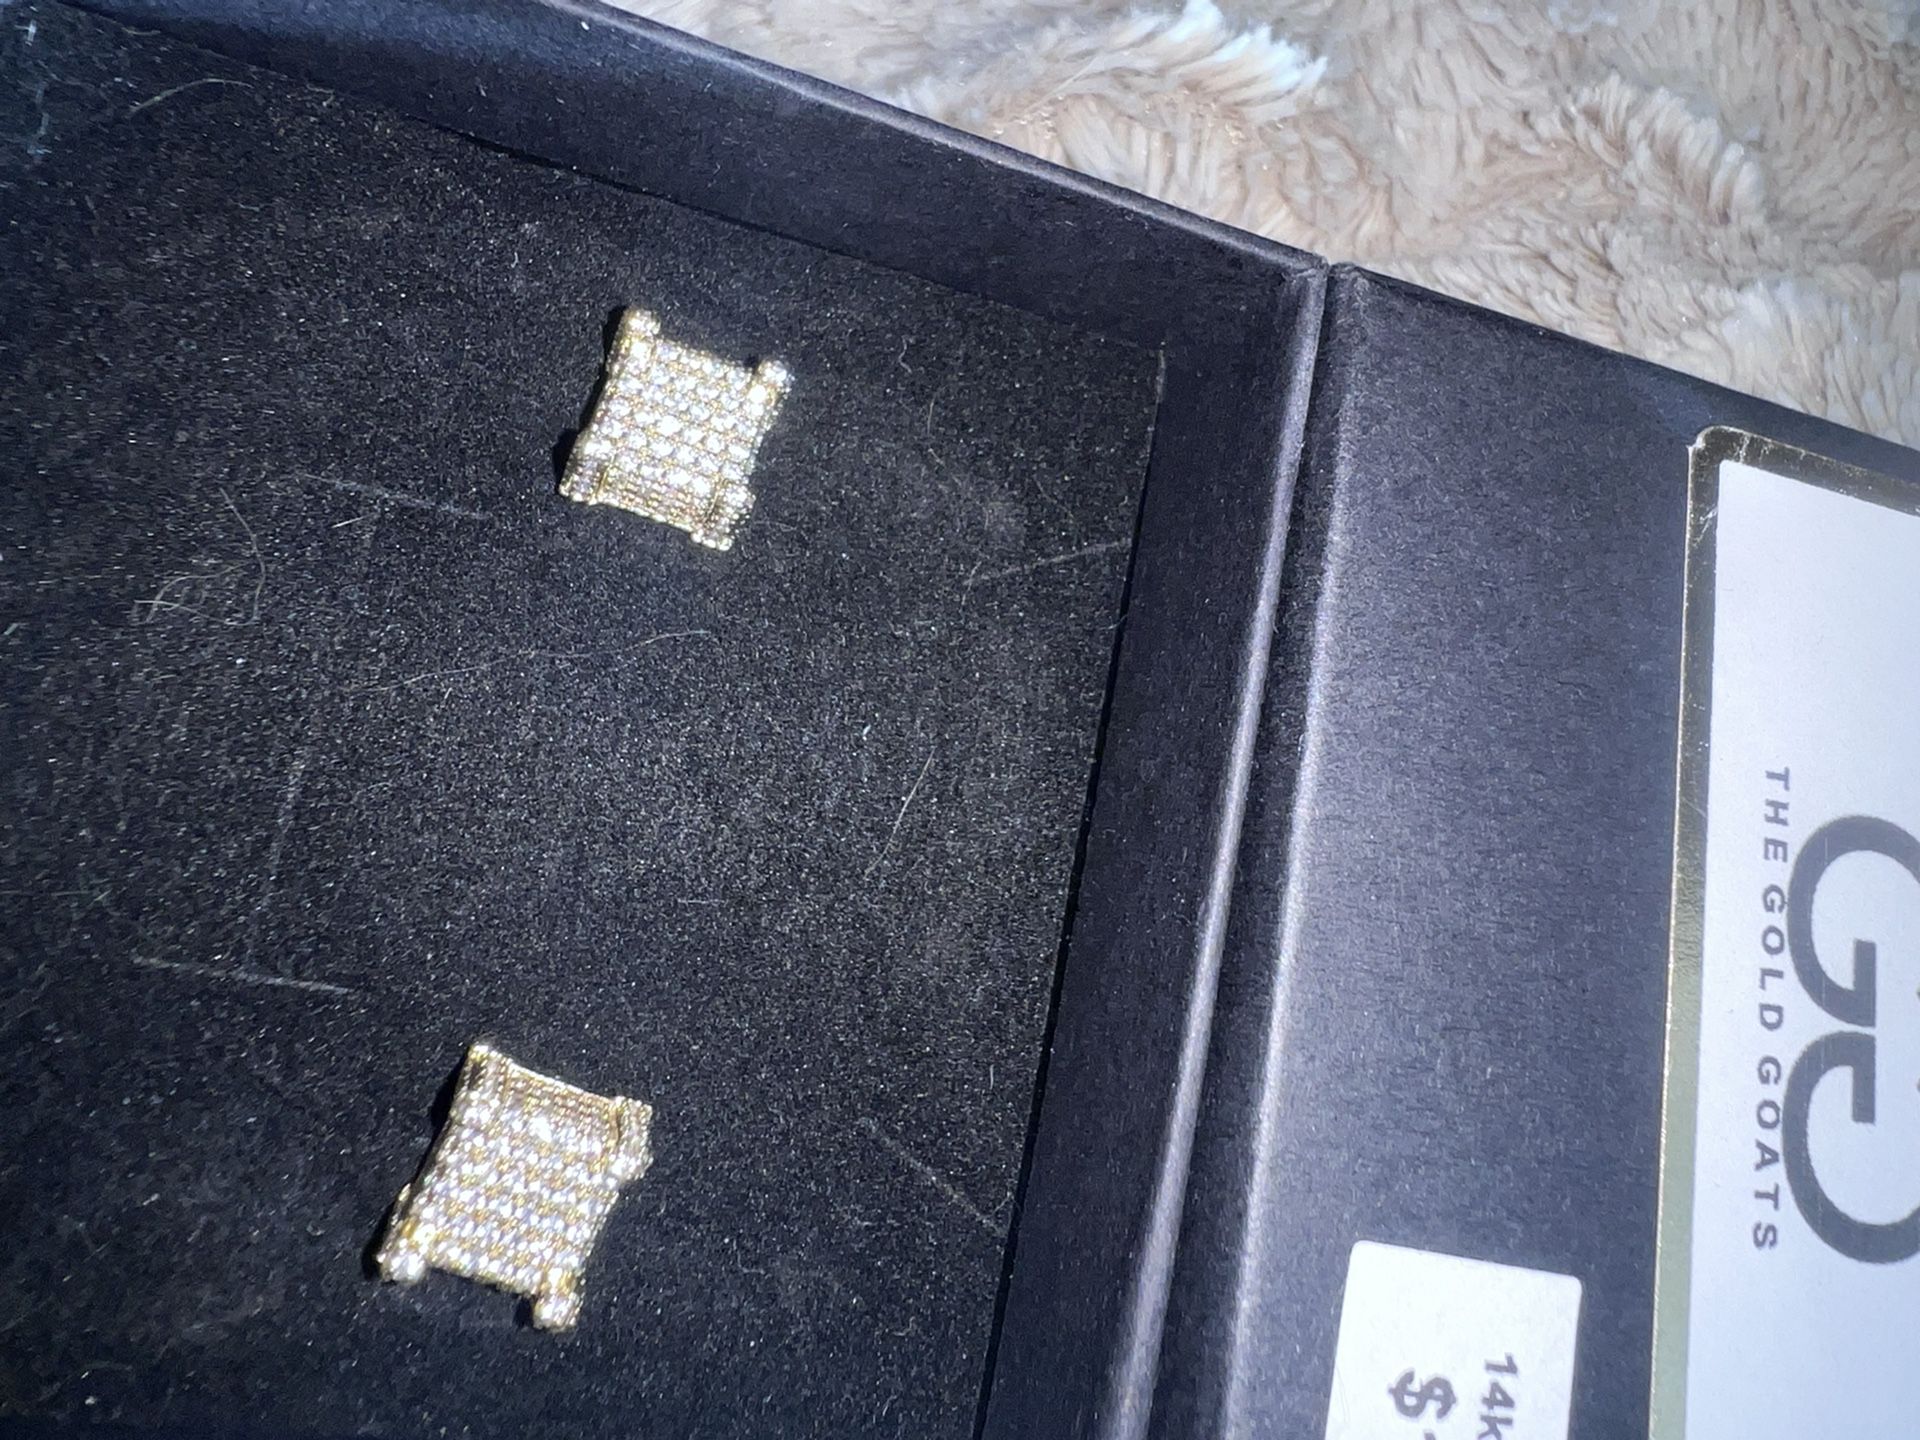 14k Diamond Earrings 